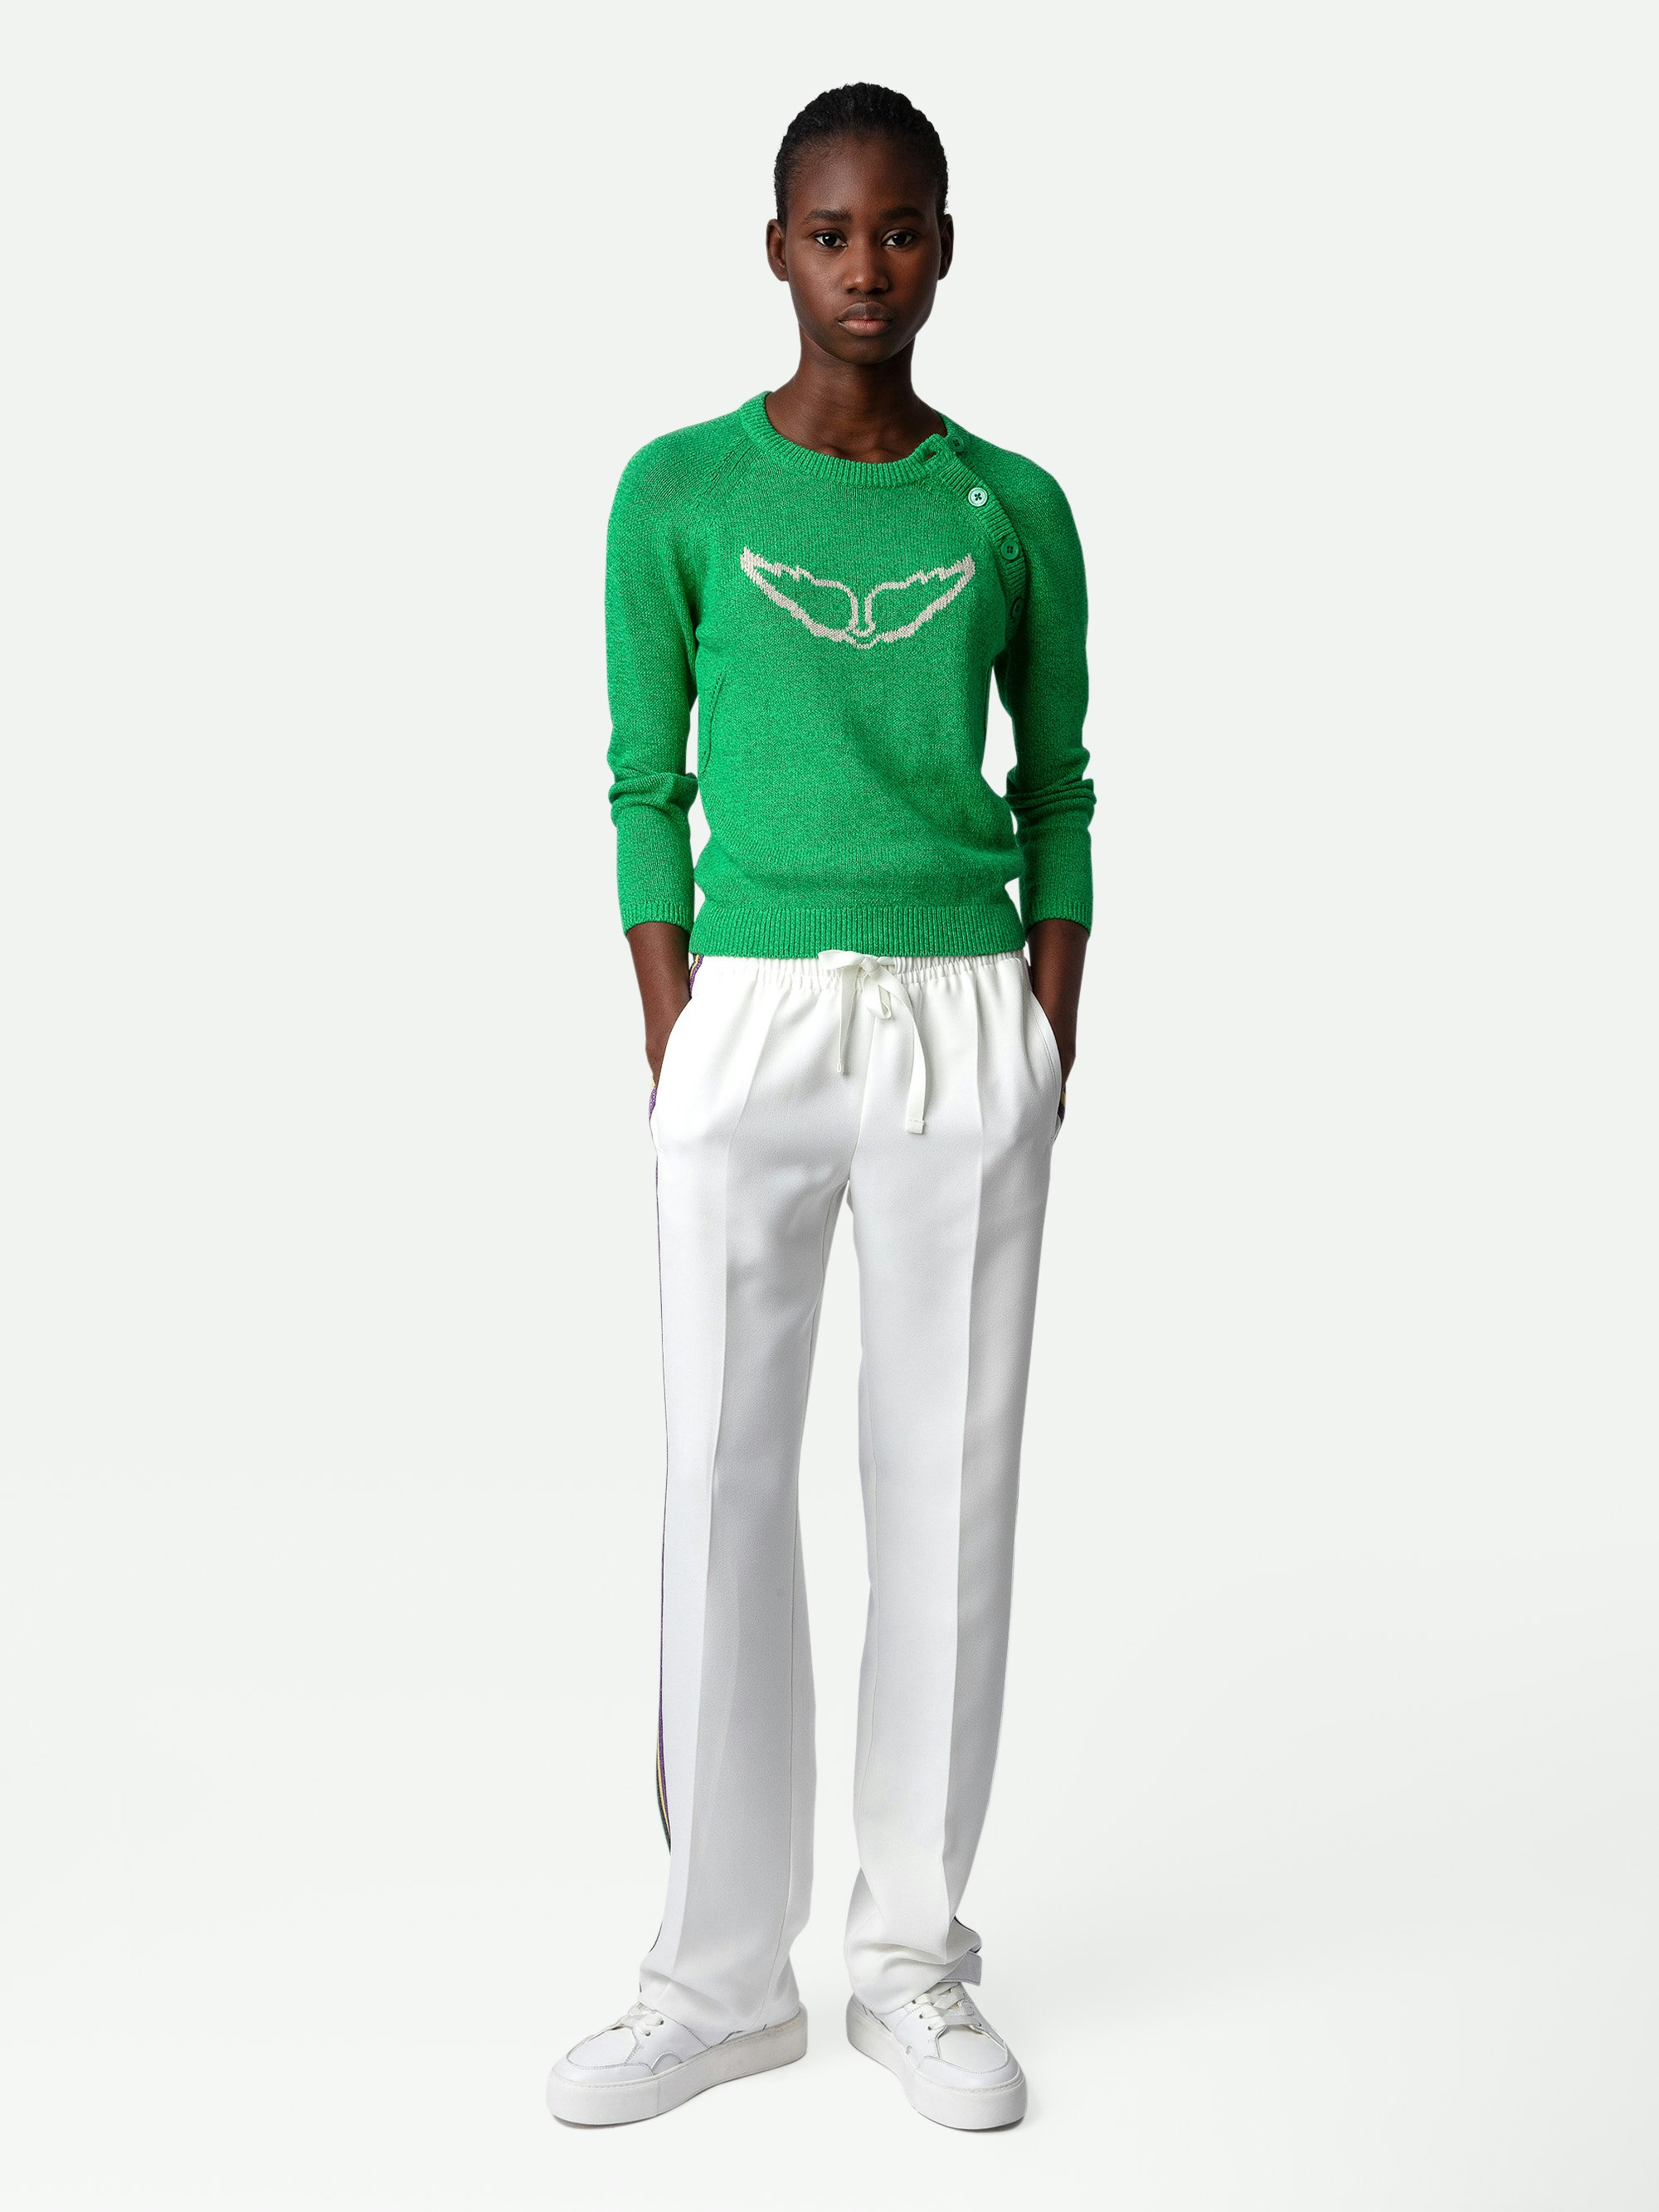 Pullover Regliss Wings - Kurzer, grüner Pullover aus Leinen mit Knöpfen und Flügeln als Jacquard-Intarsie.